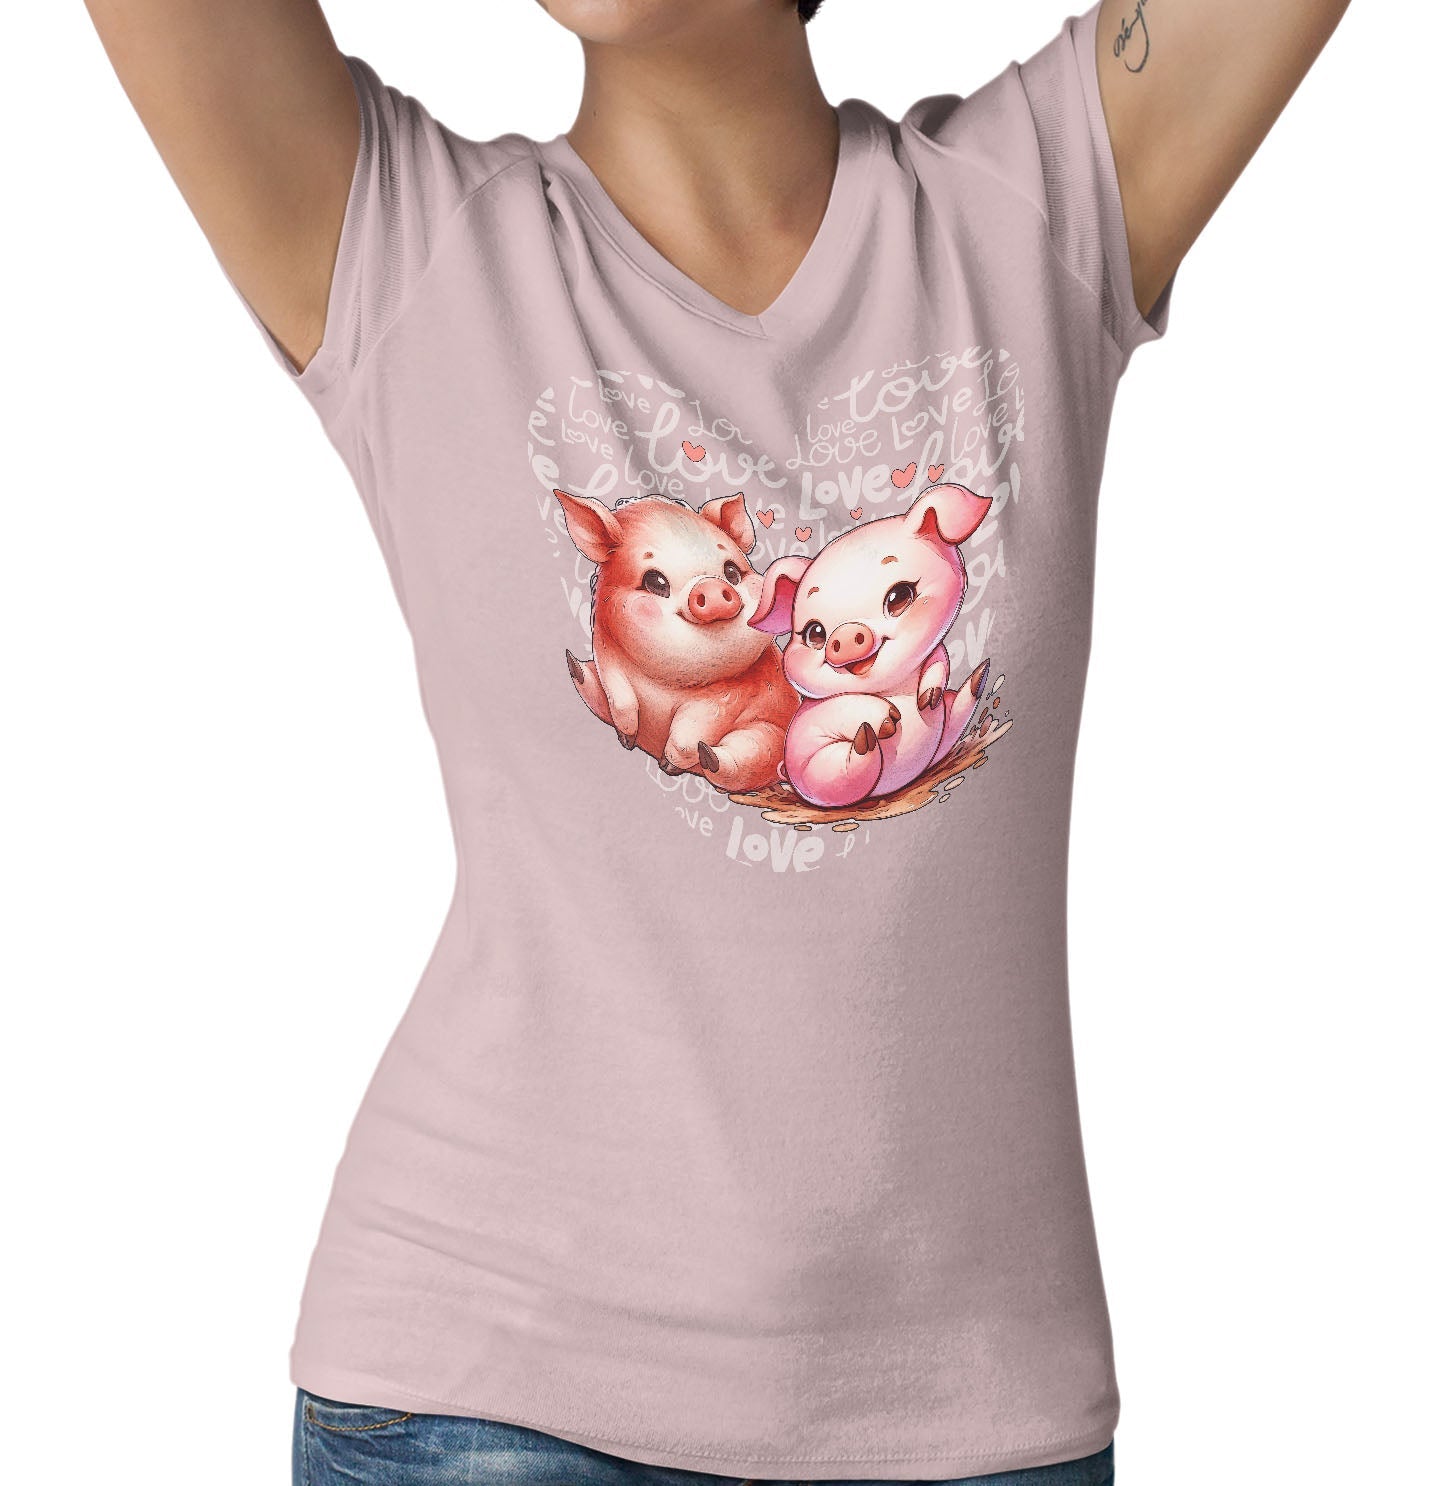 Pig Love Heart - Women's V-Neck T-Shirt